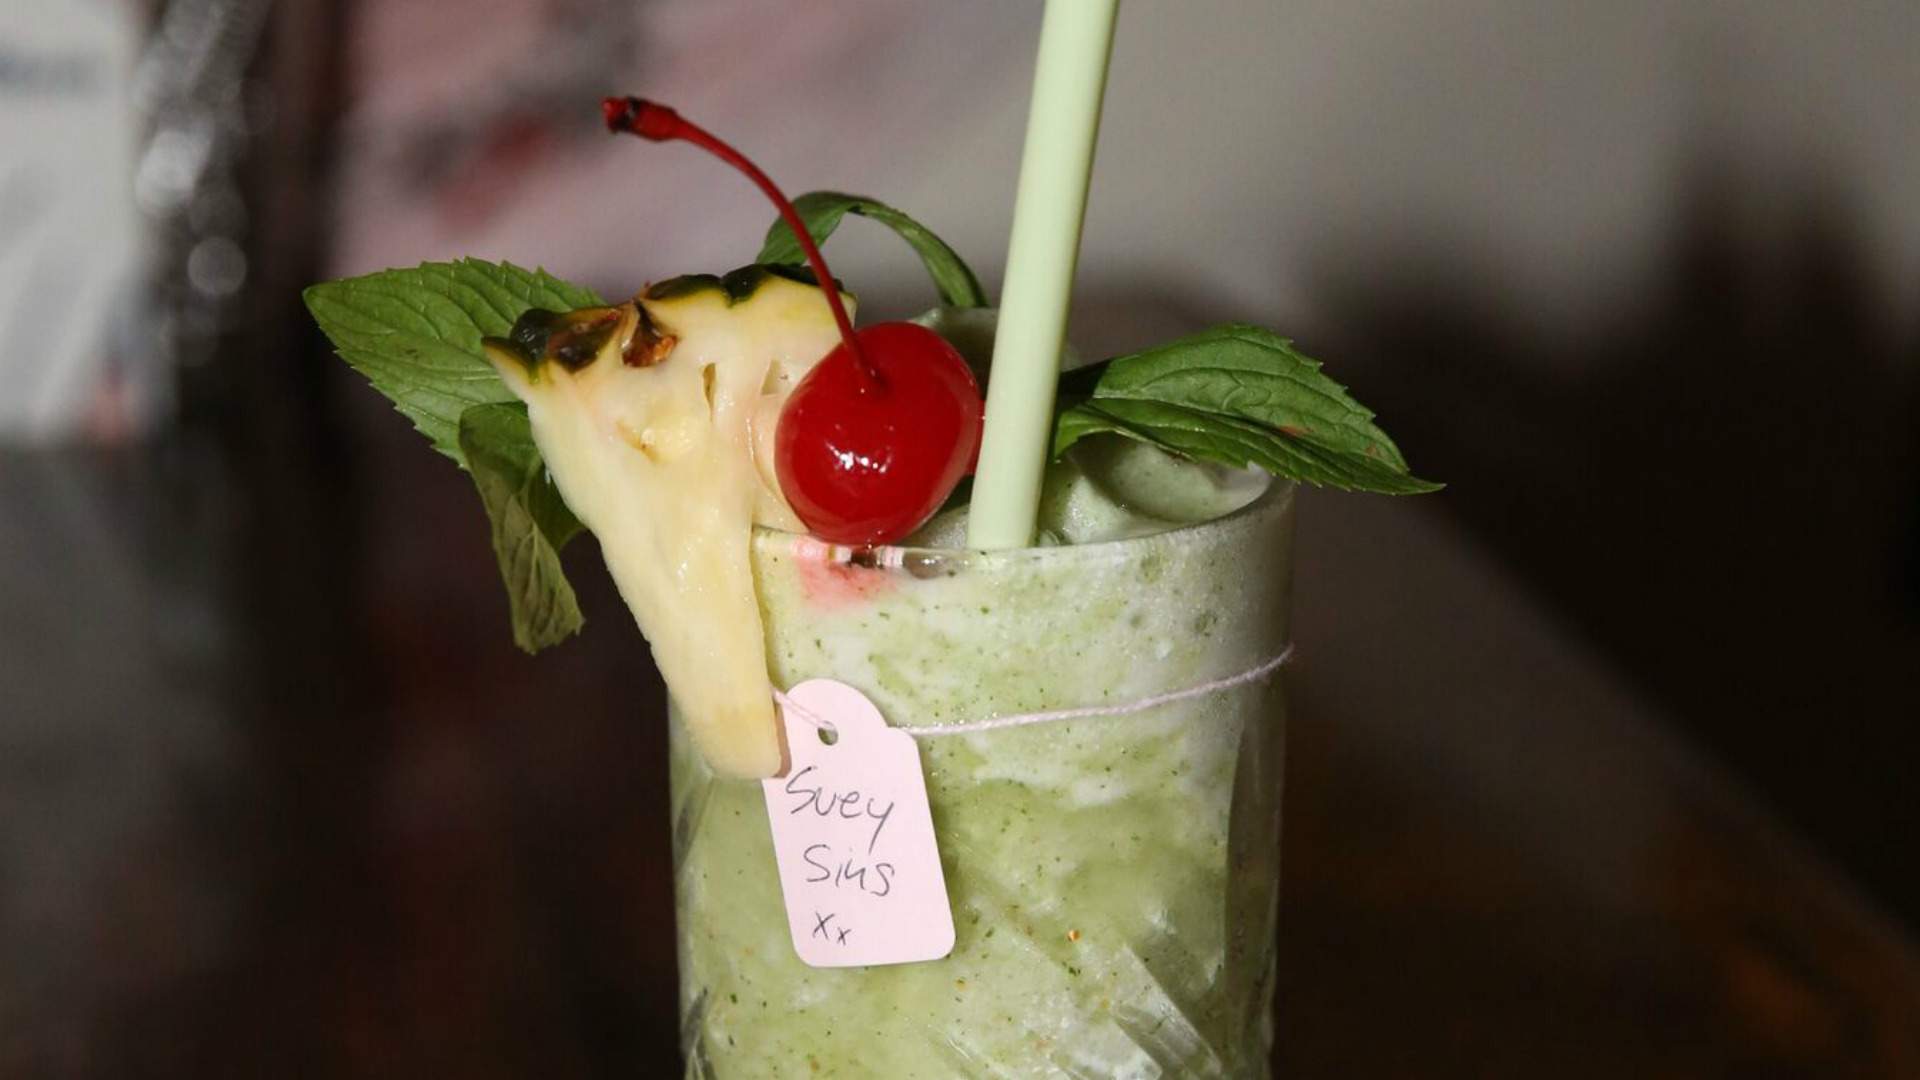 Suey Sins Is Surry Hills' New Apparently 'Pre-War Shanghai-Inspired' Drinking Den